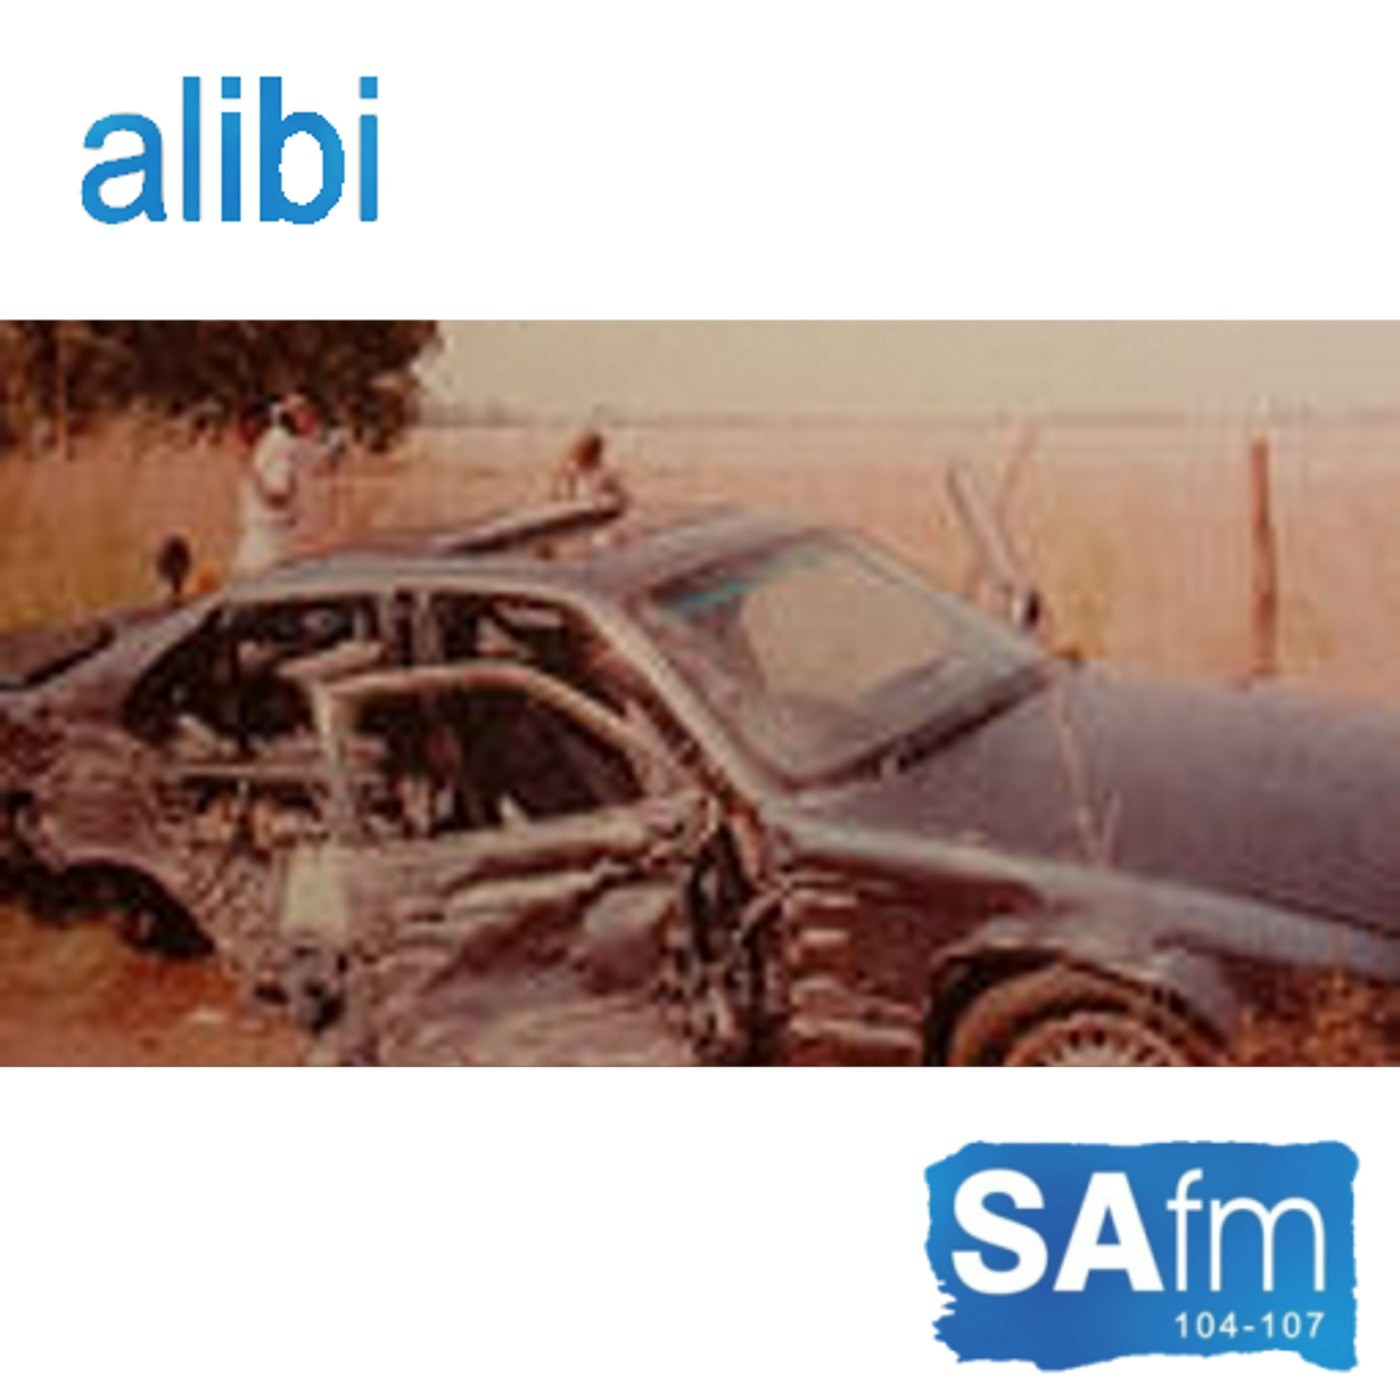 Alibi radio series - Episode 5